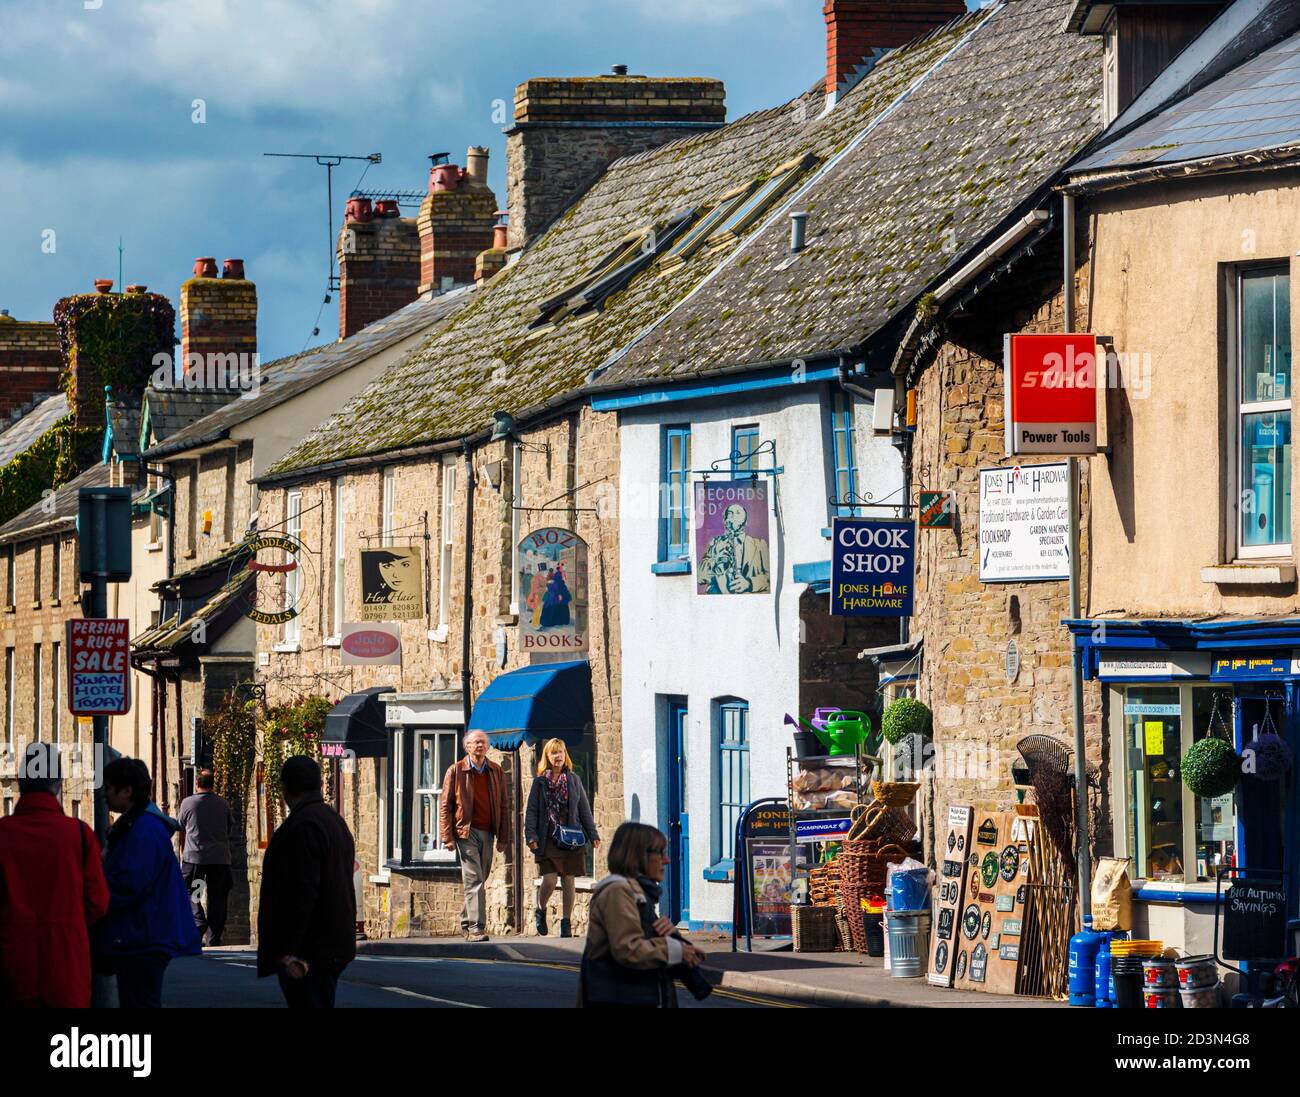 Hay-on-Wye, Powys, pays de Galles, Royaume-Uni. Scène dans Castle Street. La ville est célèbre pour son nombre de boutiques de livres. Banque D'Images